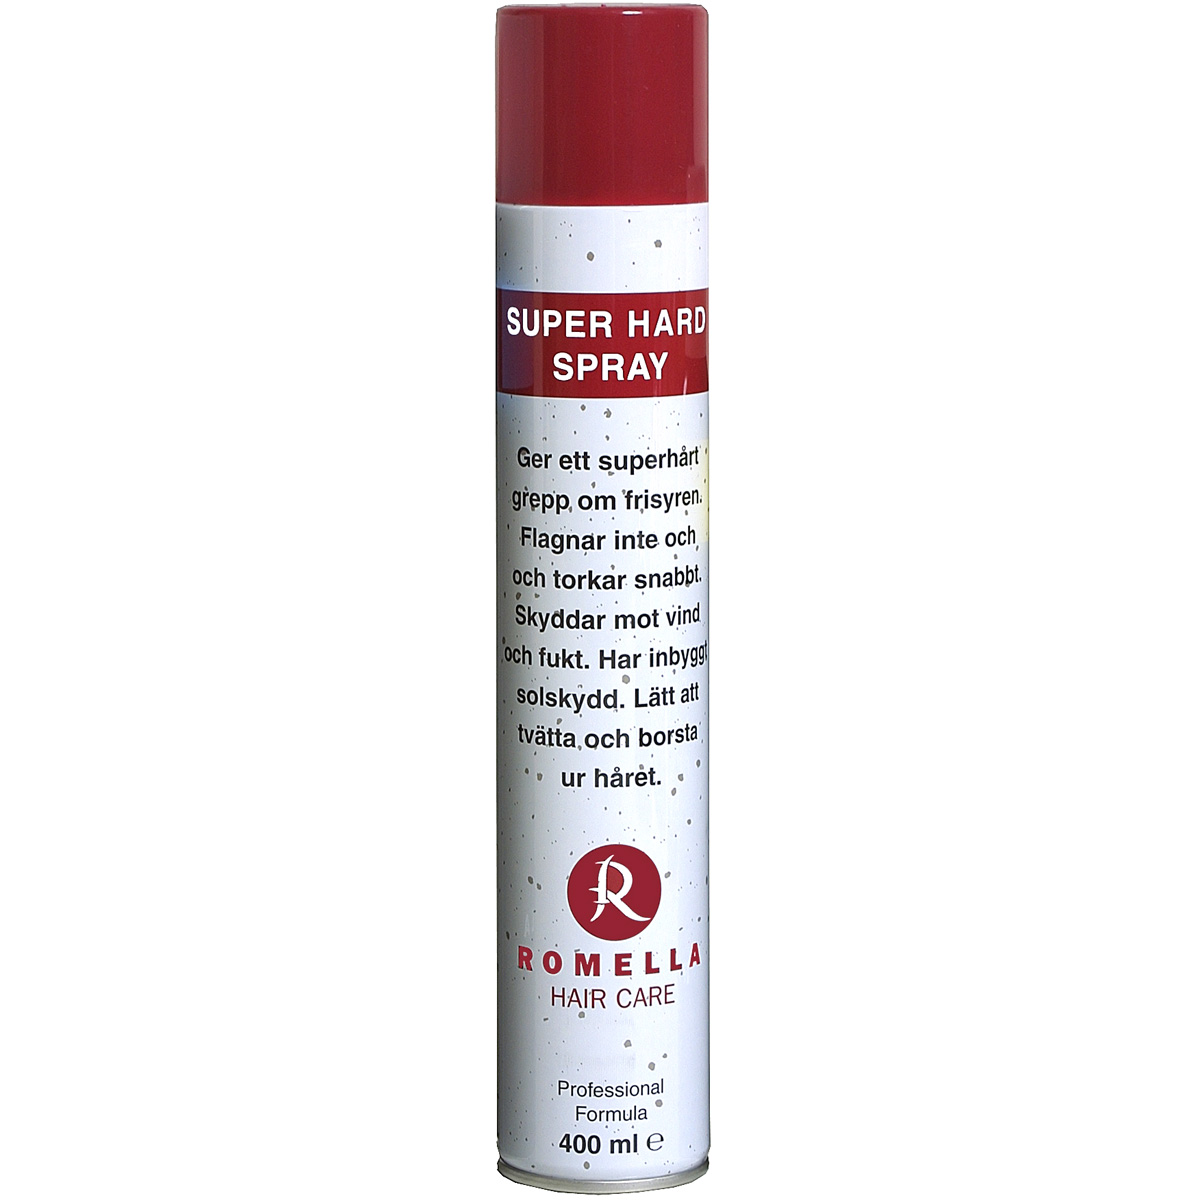 Super Hard Spray, 400 ml Romella Hårspray